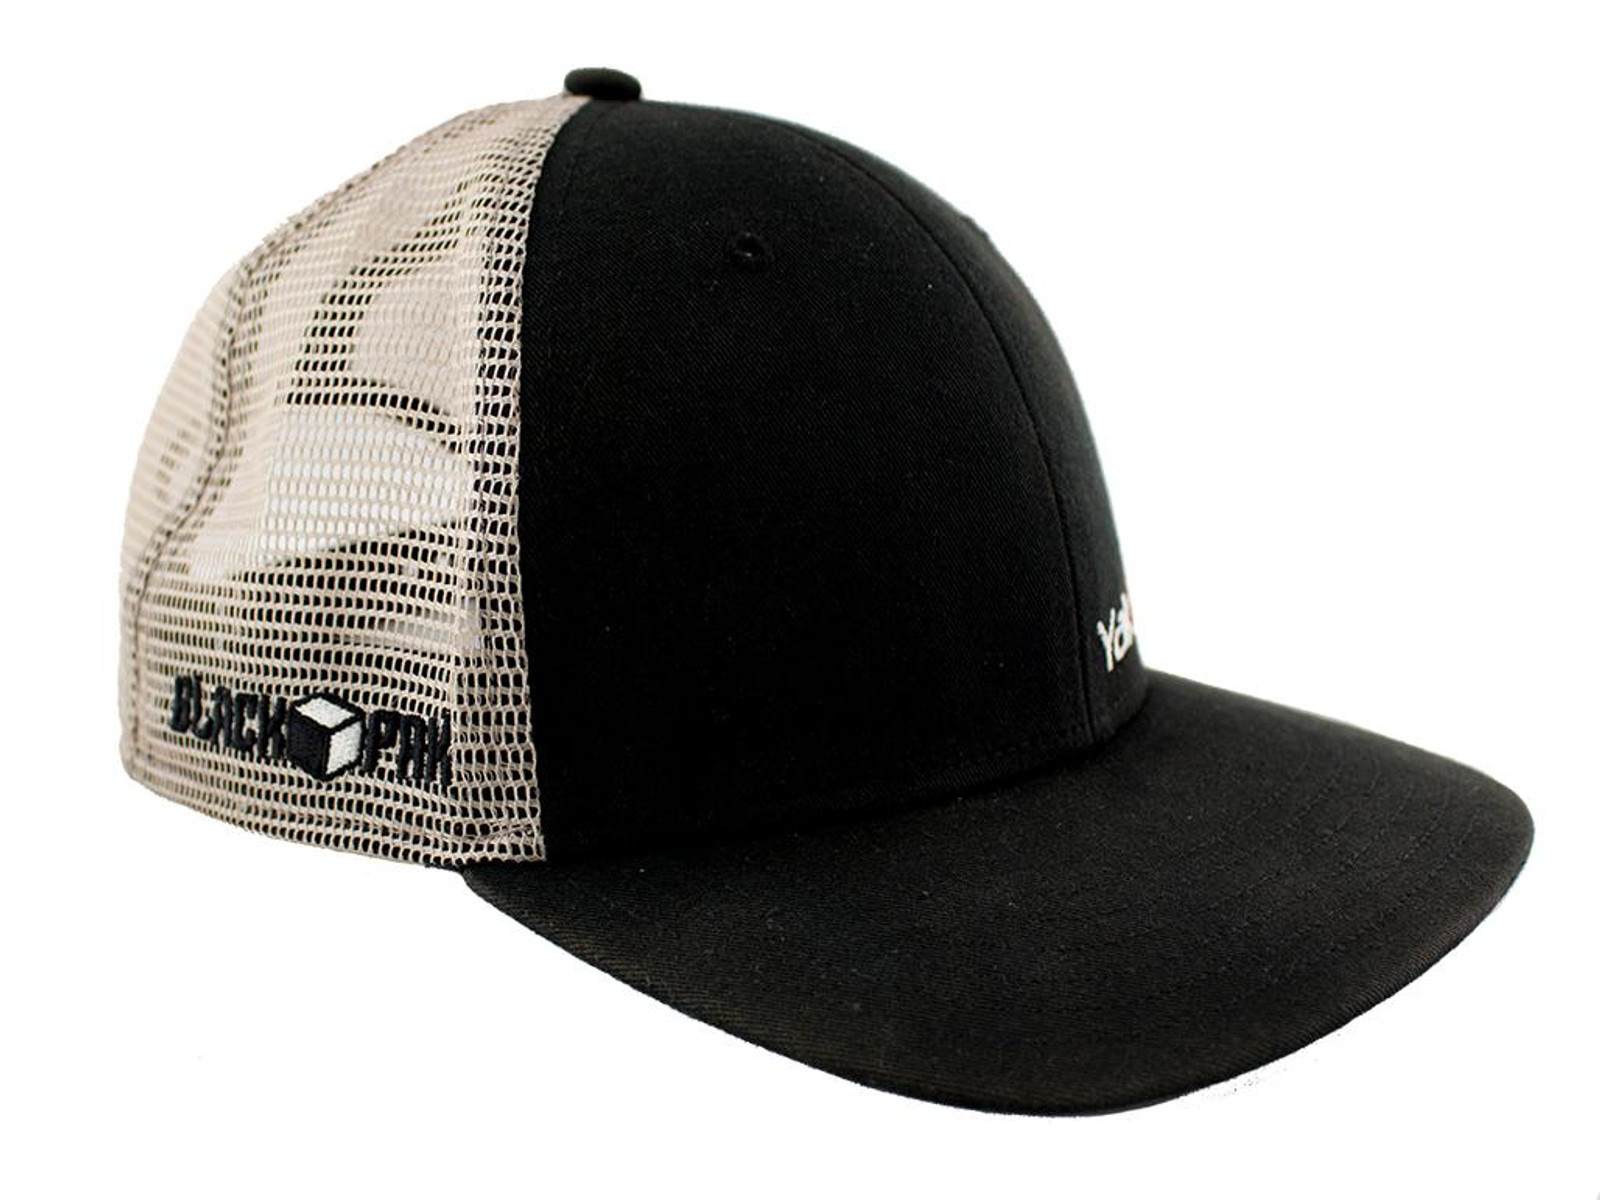 BlackPak Trucker Hat - Black/Tan ATS-1009-TA